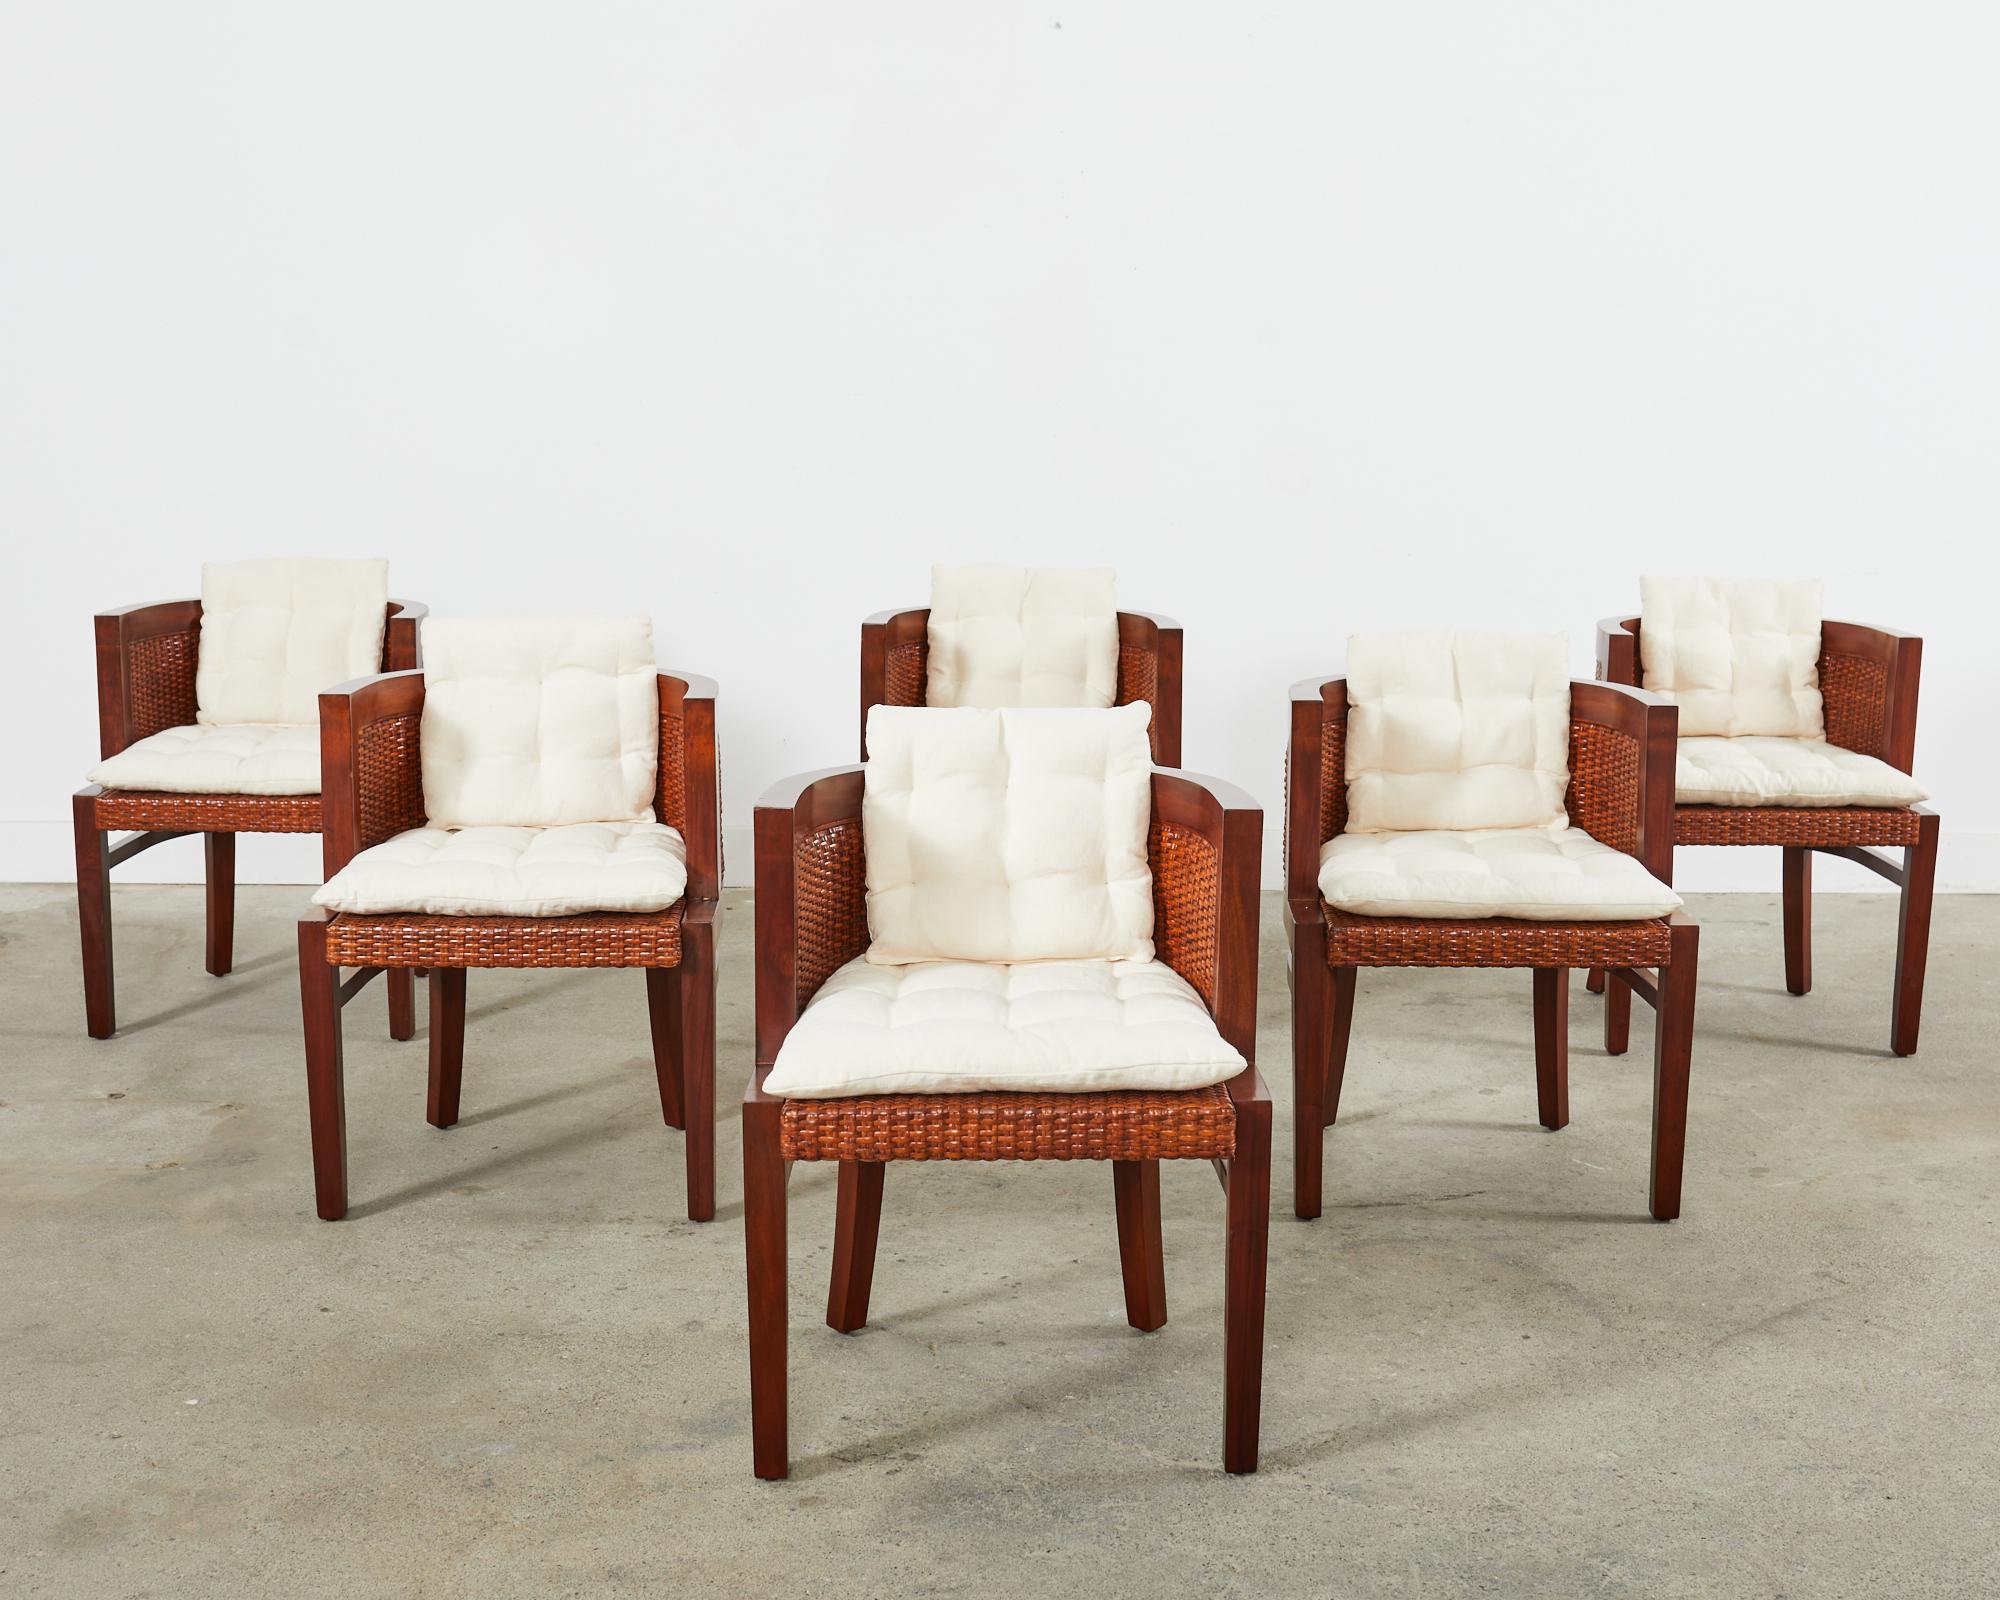 Rare ensemble de six chaises de salle à manger ou fauteuils à dossier en tonneau, de style colonial britannique, par Ralph Lauren Home. Connues sous le nom de chaises de la collection Collection Sands, elles se caractérisent par une structure en